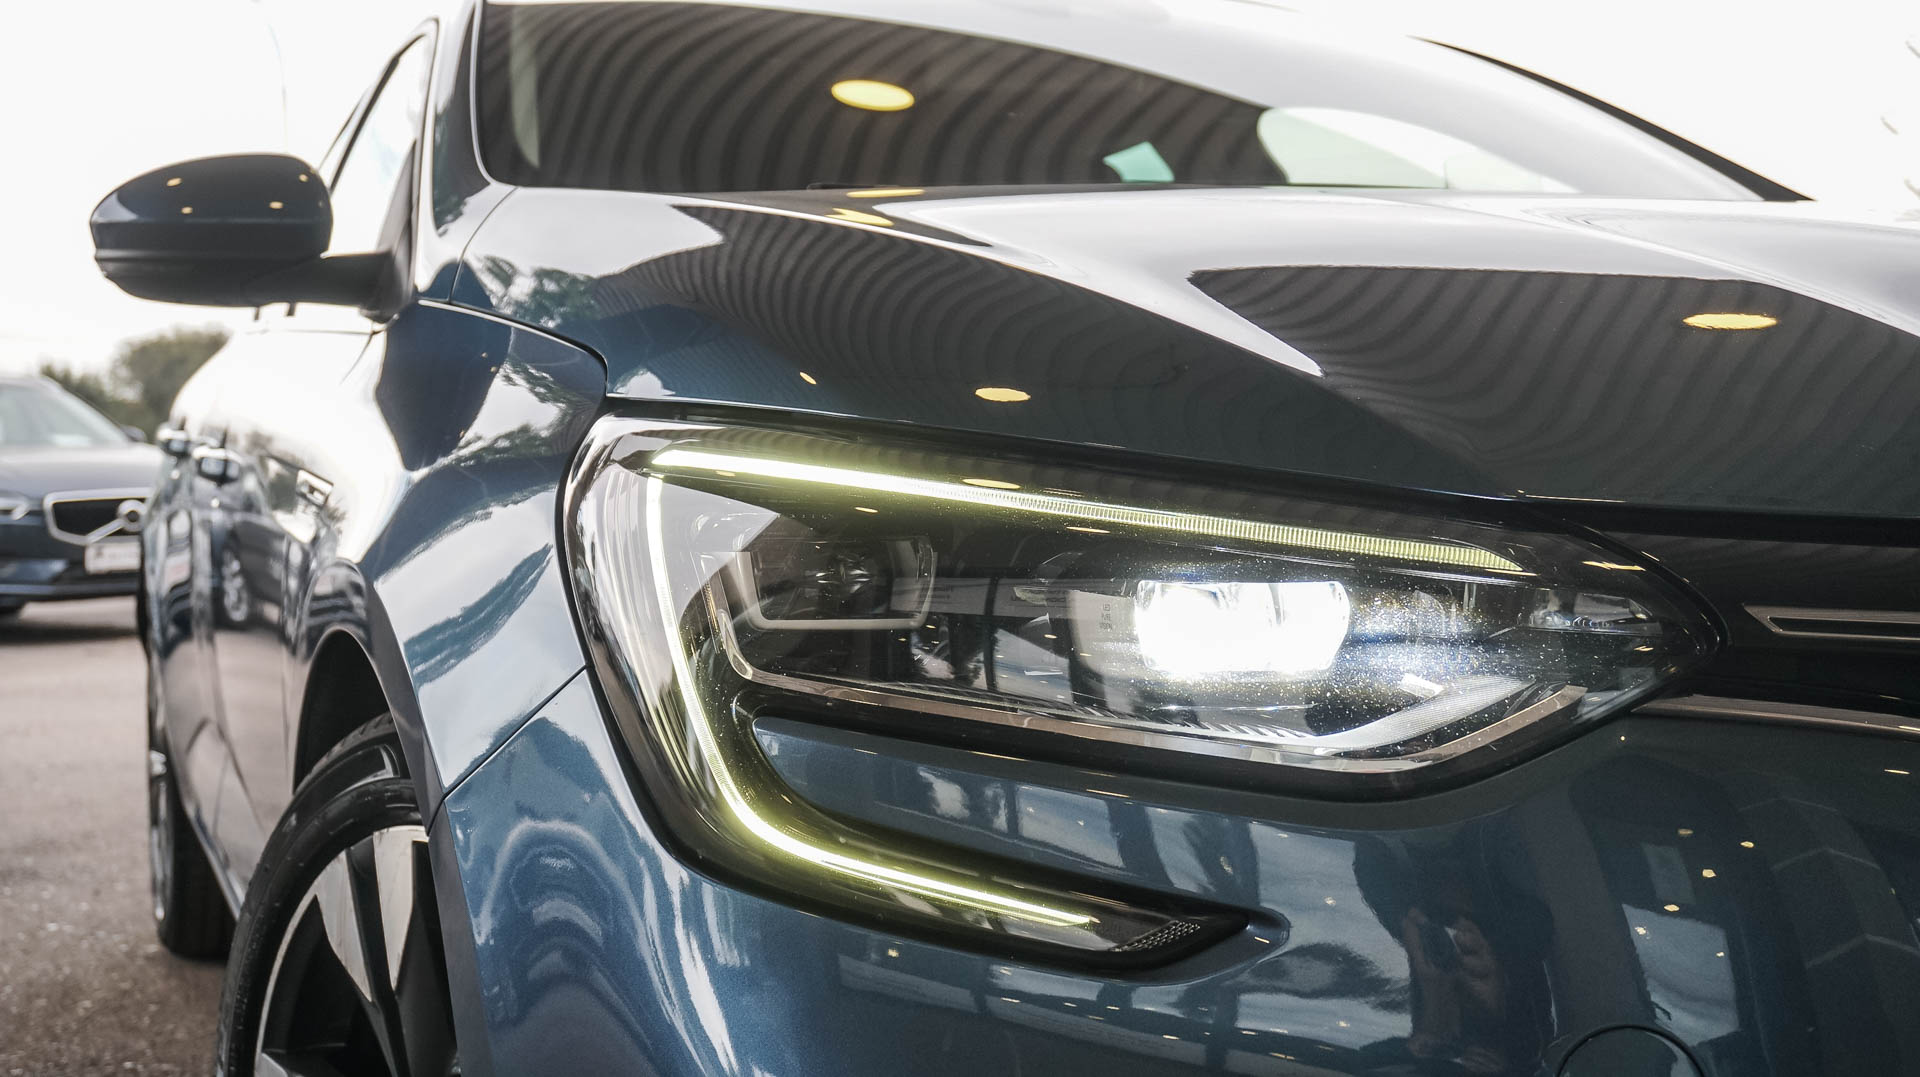 Renault Megane Intens Energy Hatchback